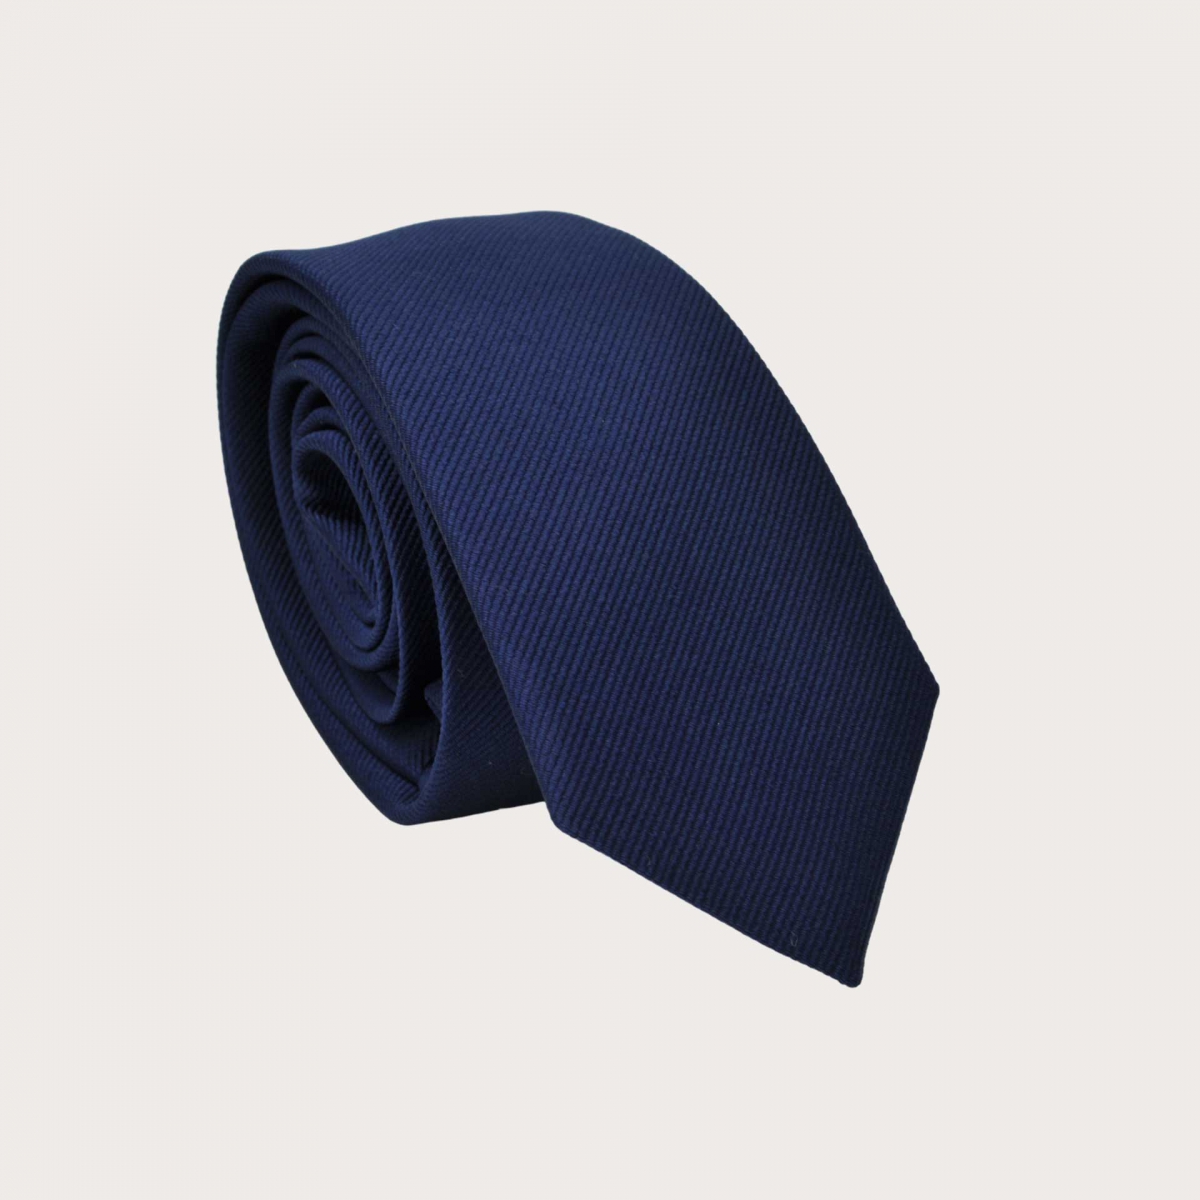 Corbatas finas de seda marino Brucle: Un toque de clase artesanal